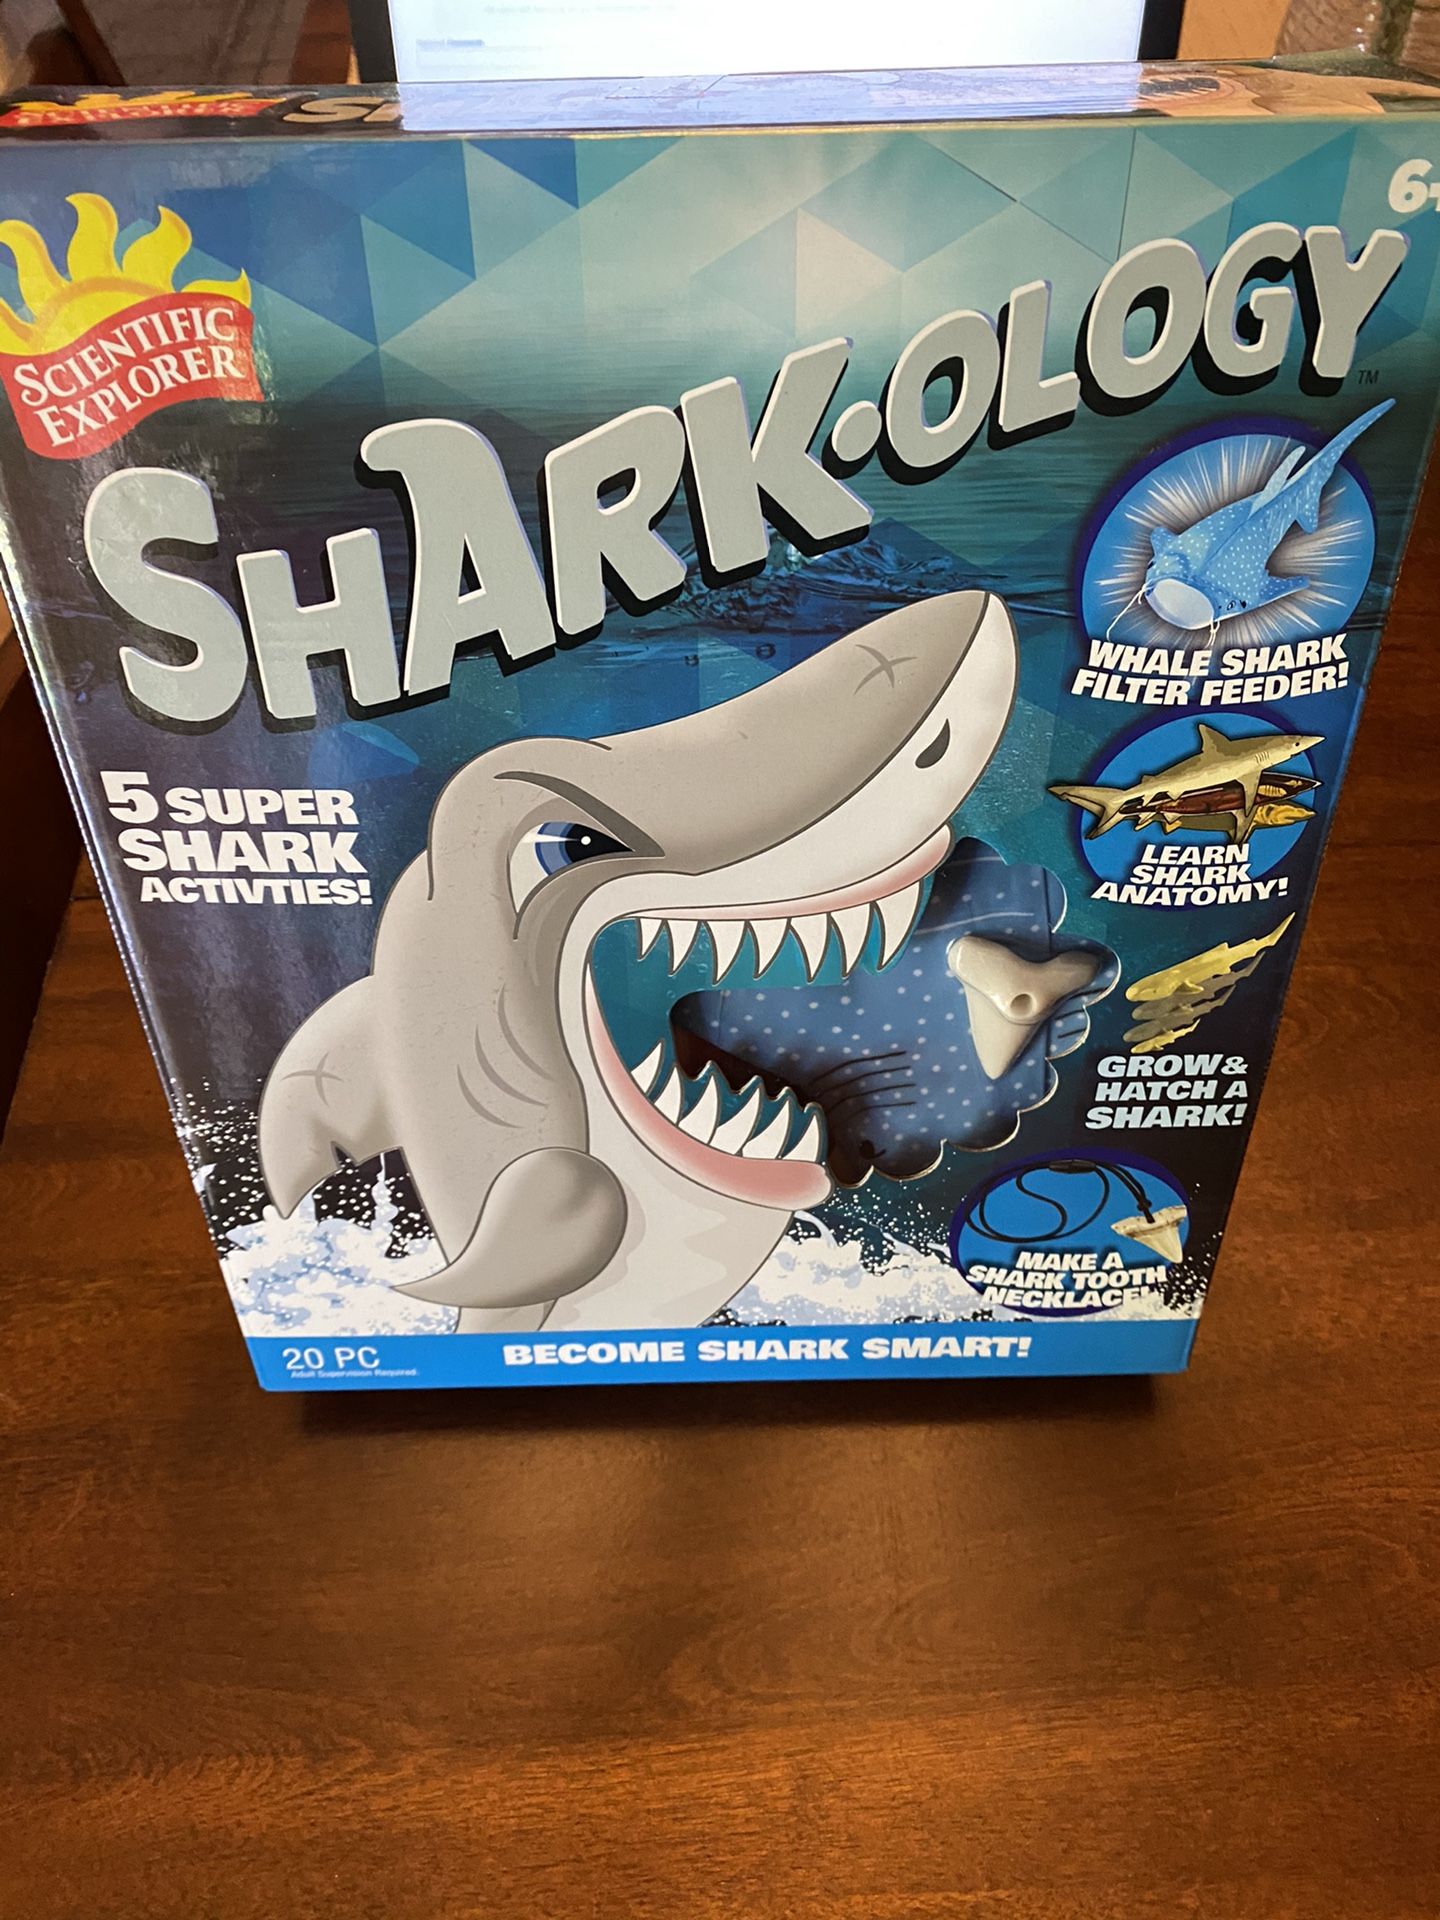 Sharkology Game for Kids